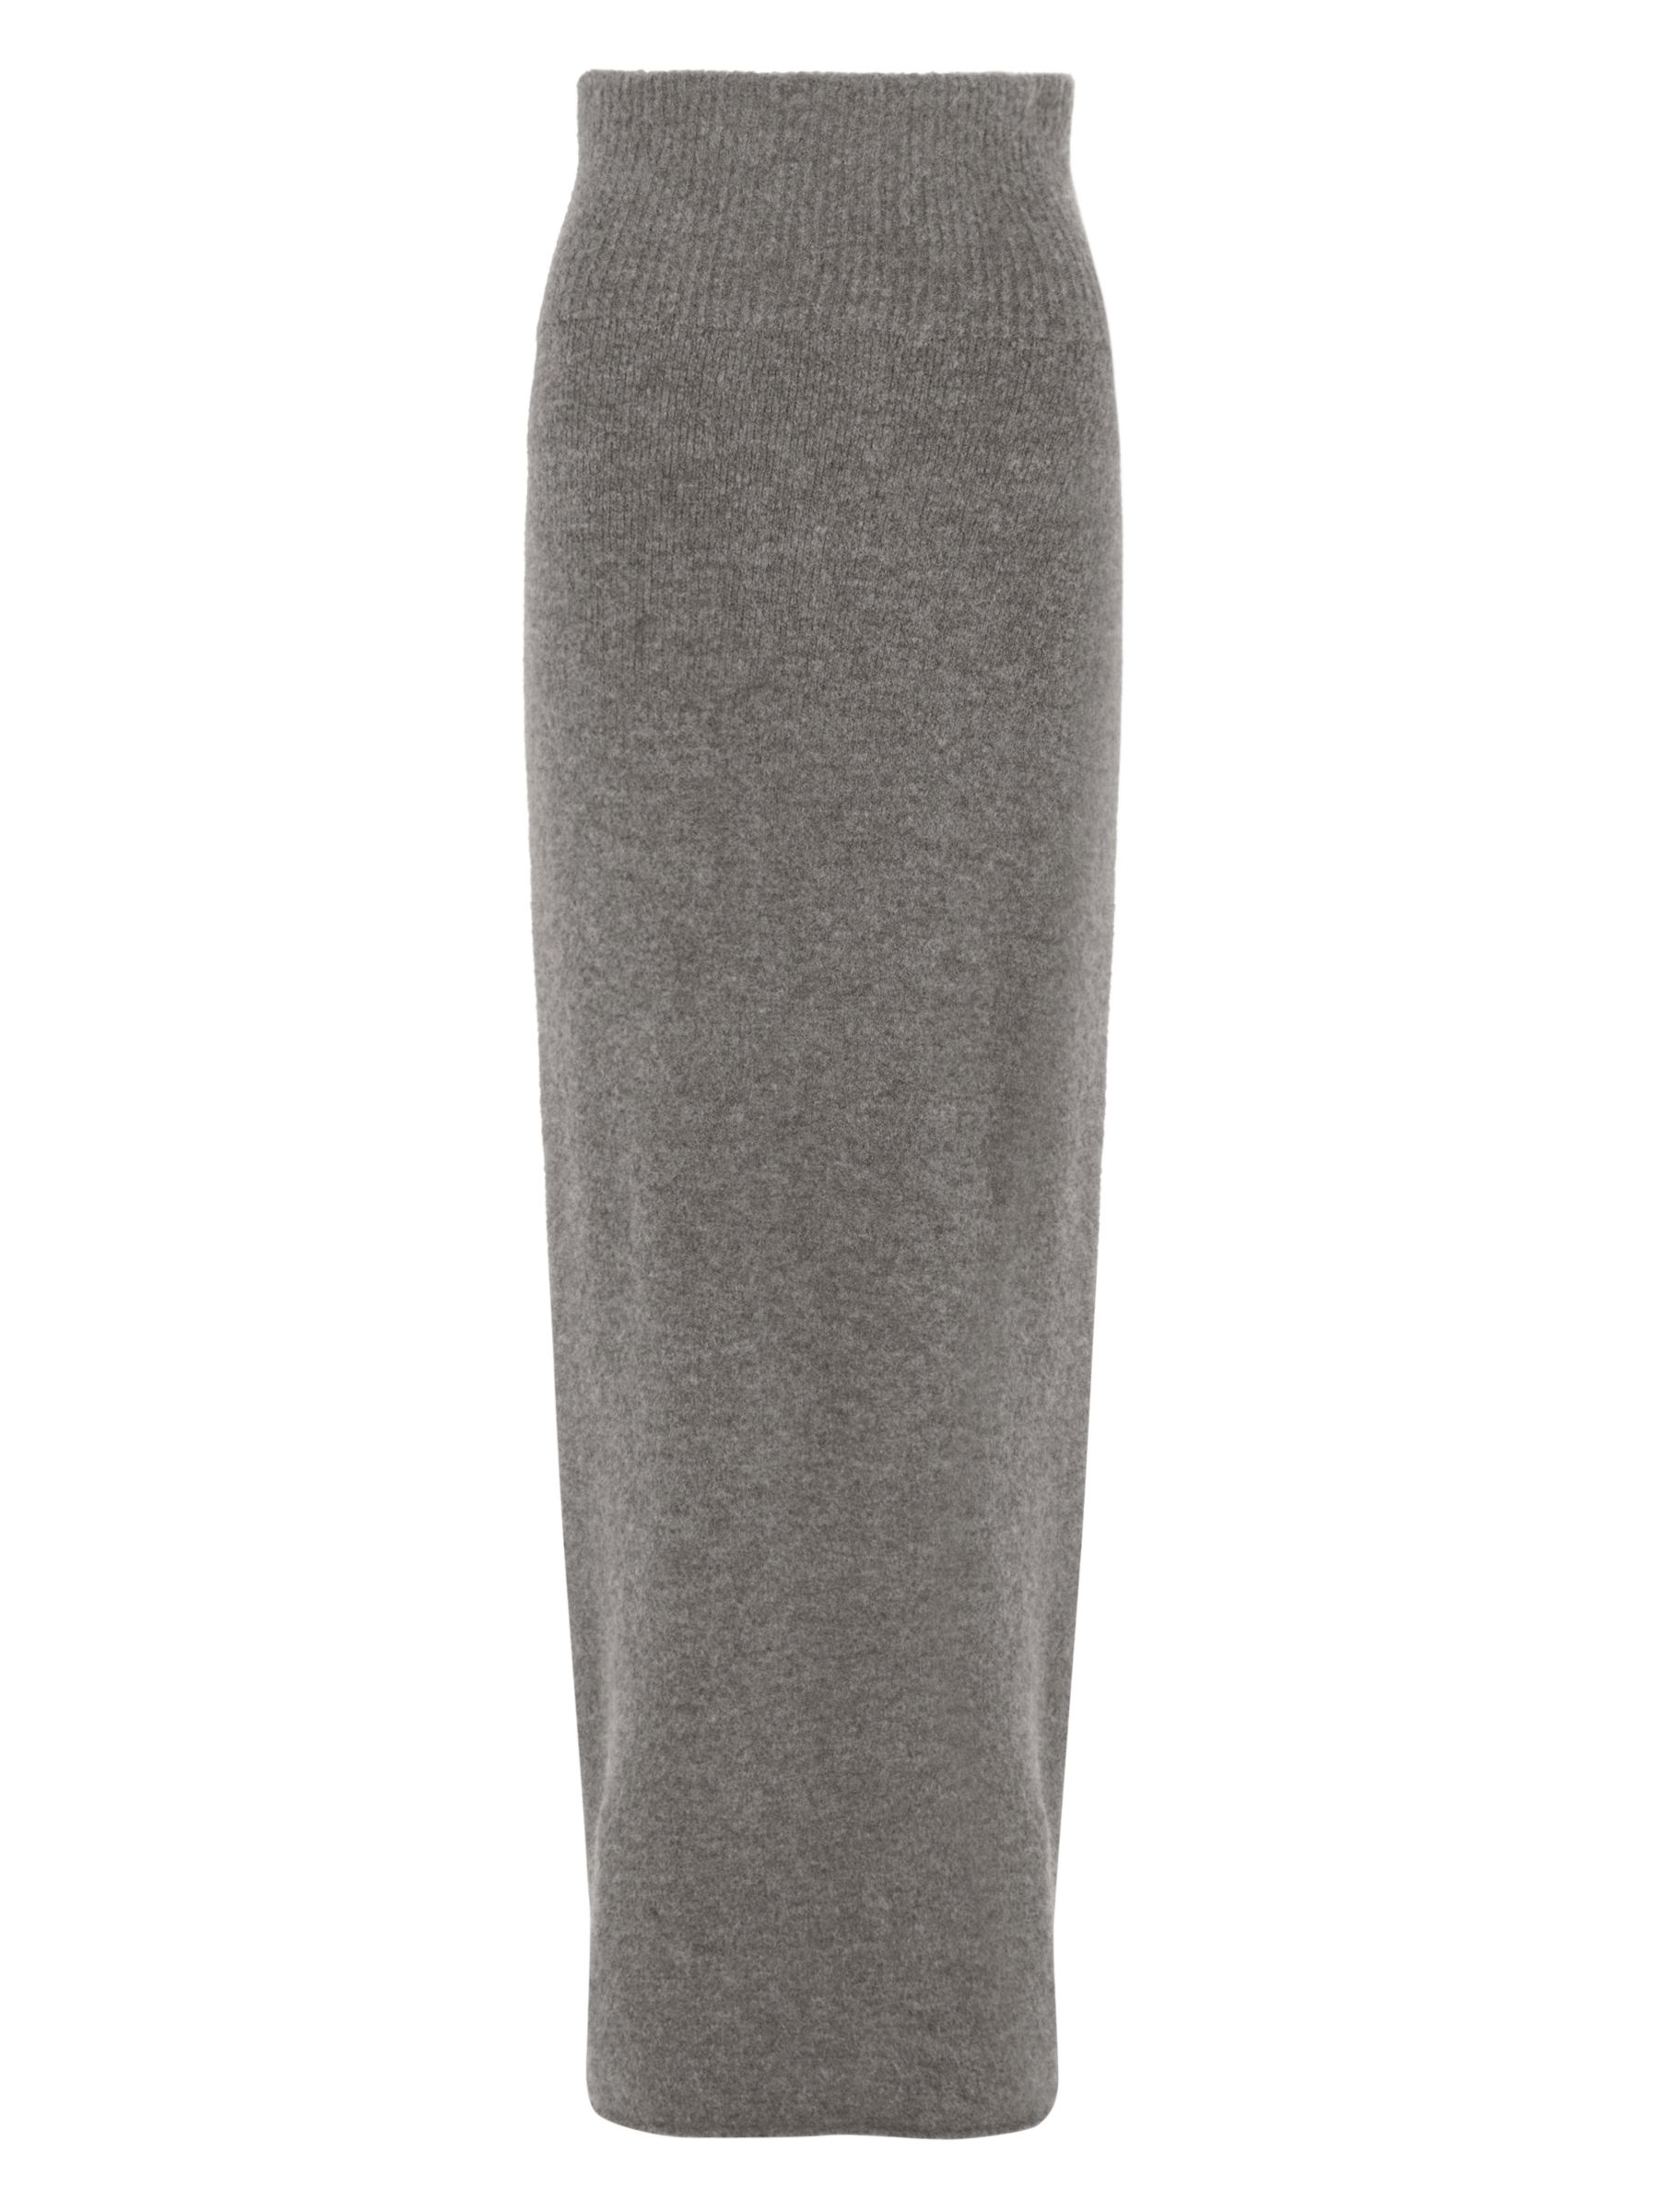 Modern Rarity Long Knitted Rib Skirt, Mink